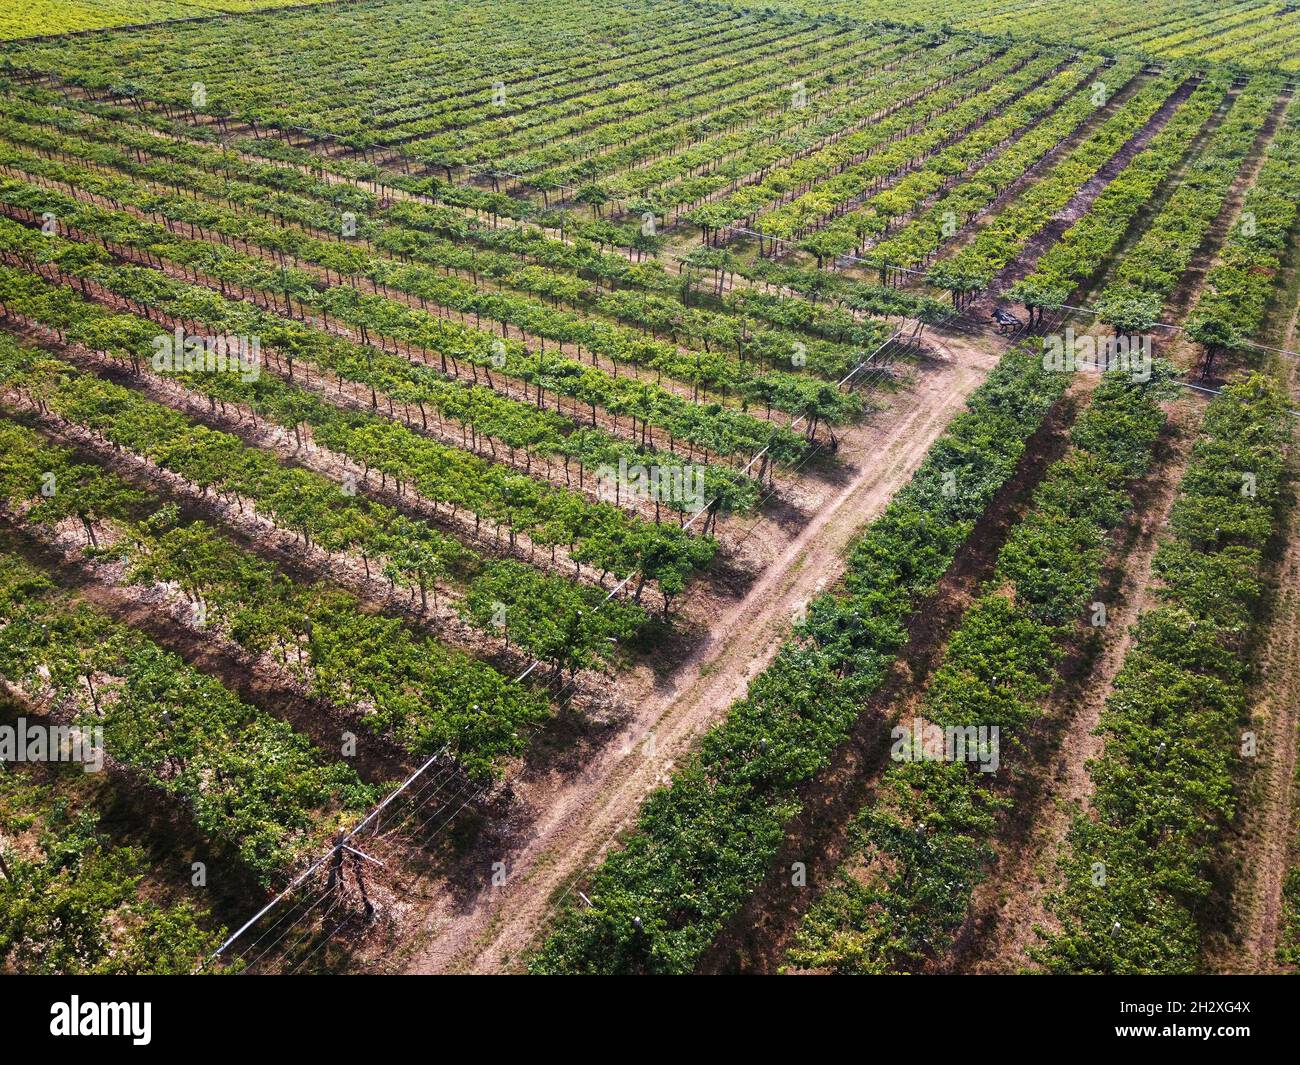 Vue aérienne du paysage depuis un drone de vignobles verts sur un domaine viticole dans un concept d'agriculture, d'agronomie, de viticulture et de production de vin Banque D'Images